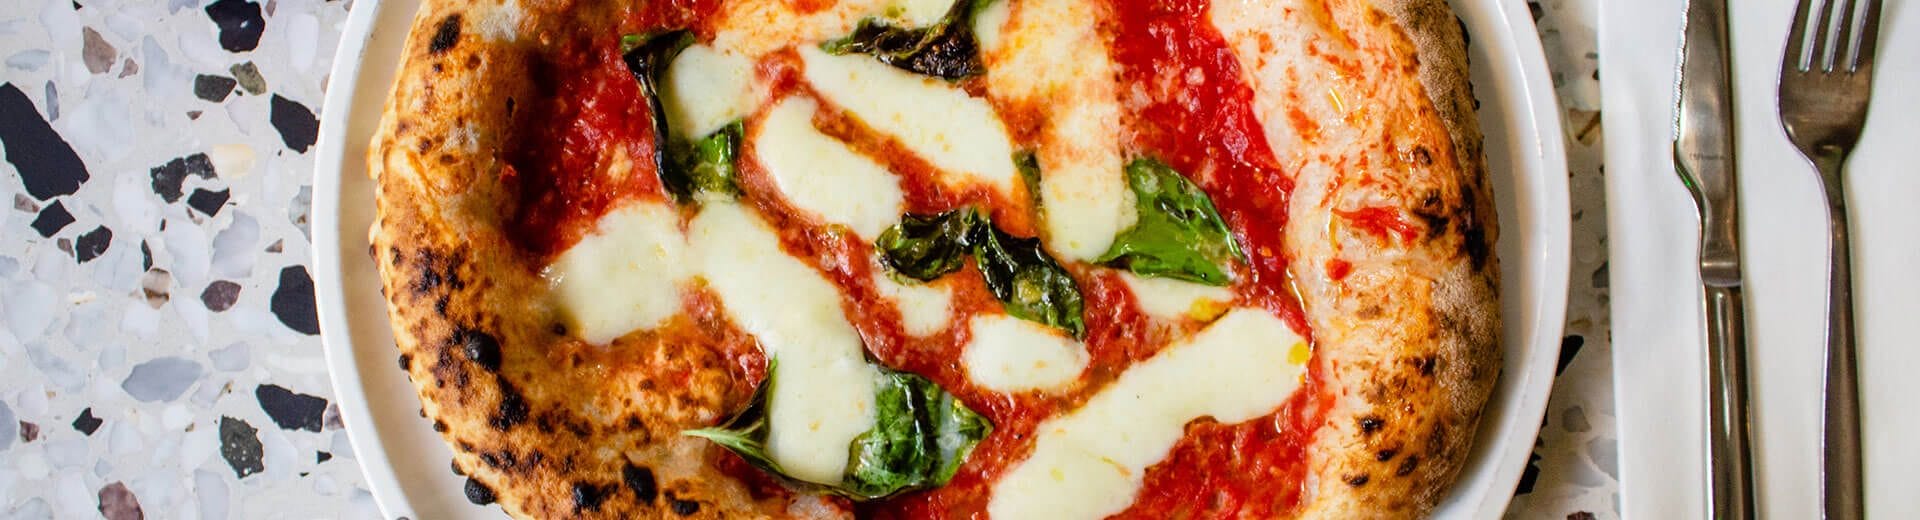 Miti e leggende sulla pizza, il piatto più amato dagli italiani